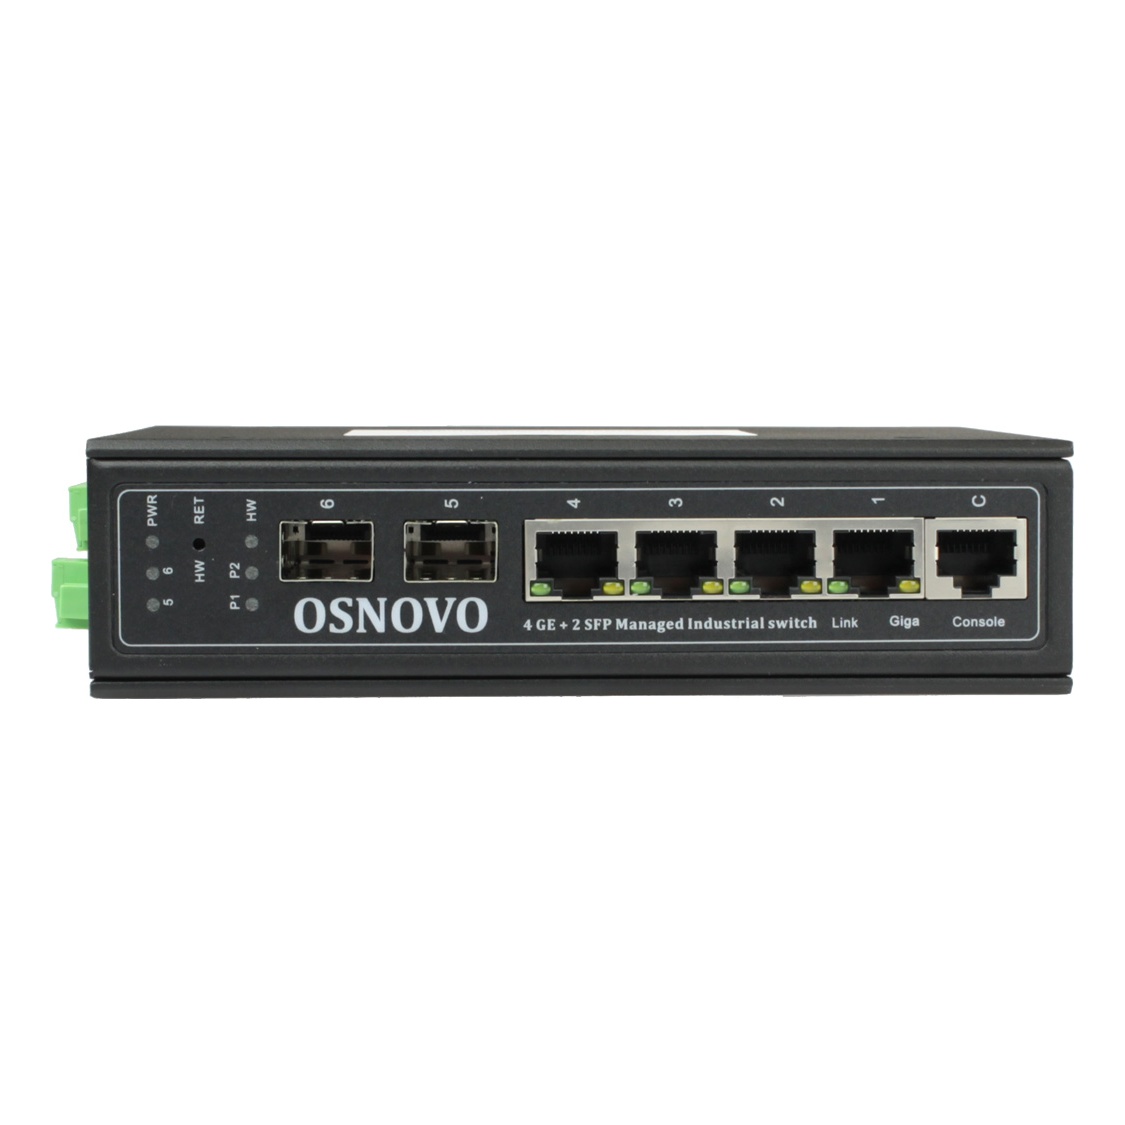 OSNOVO SW-70402/ILS SW-70402/ILS Промышленный управляемый (L2+) коммутатор Gigabit Ethernet на 4GE RJ45 + 2 GE SFP порта с функцией мониторинга температуры/ влажности/ напряжения